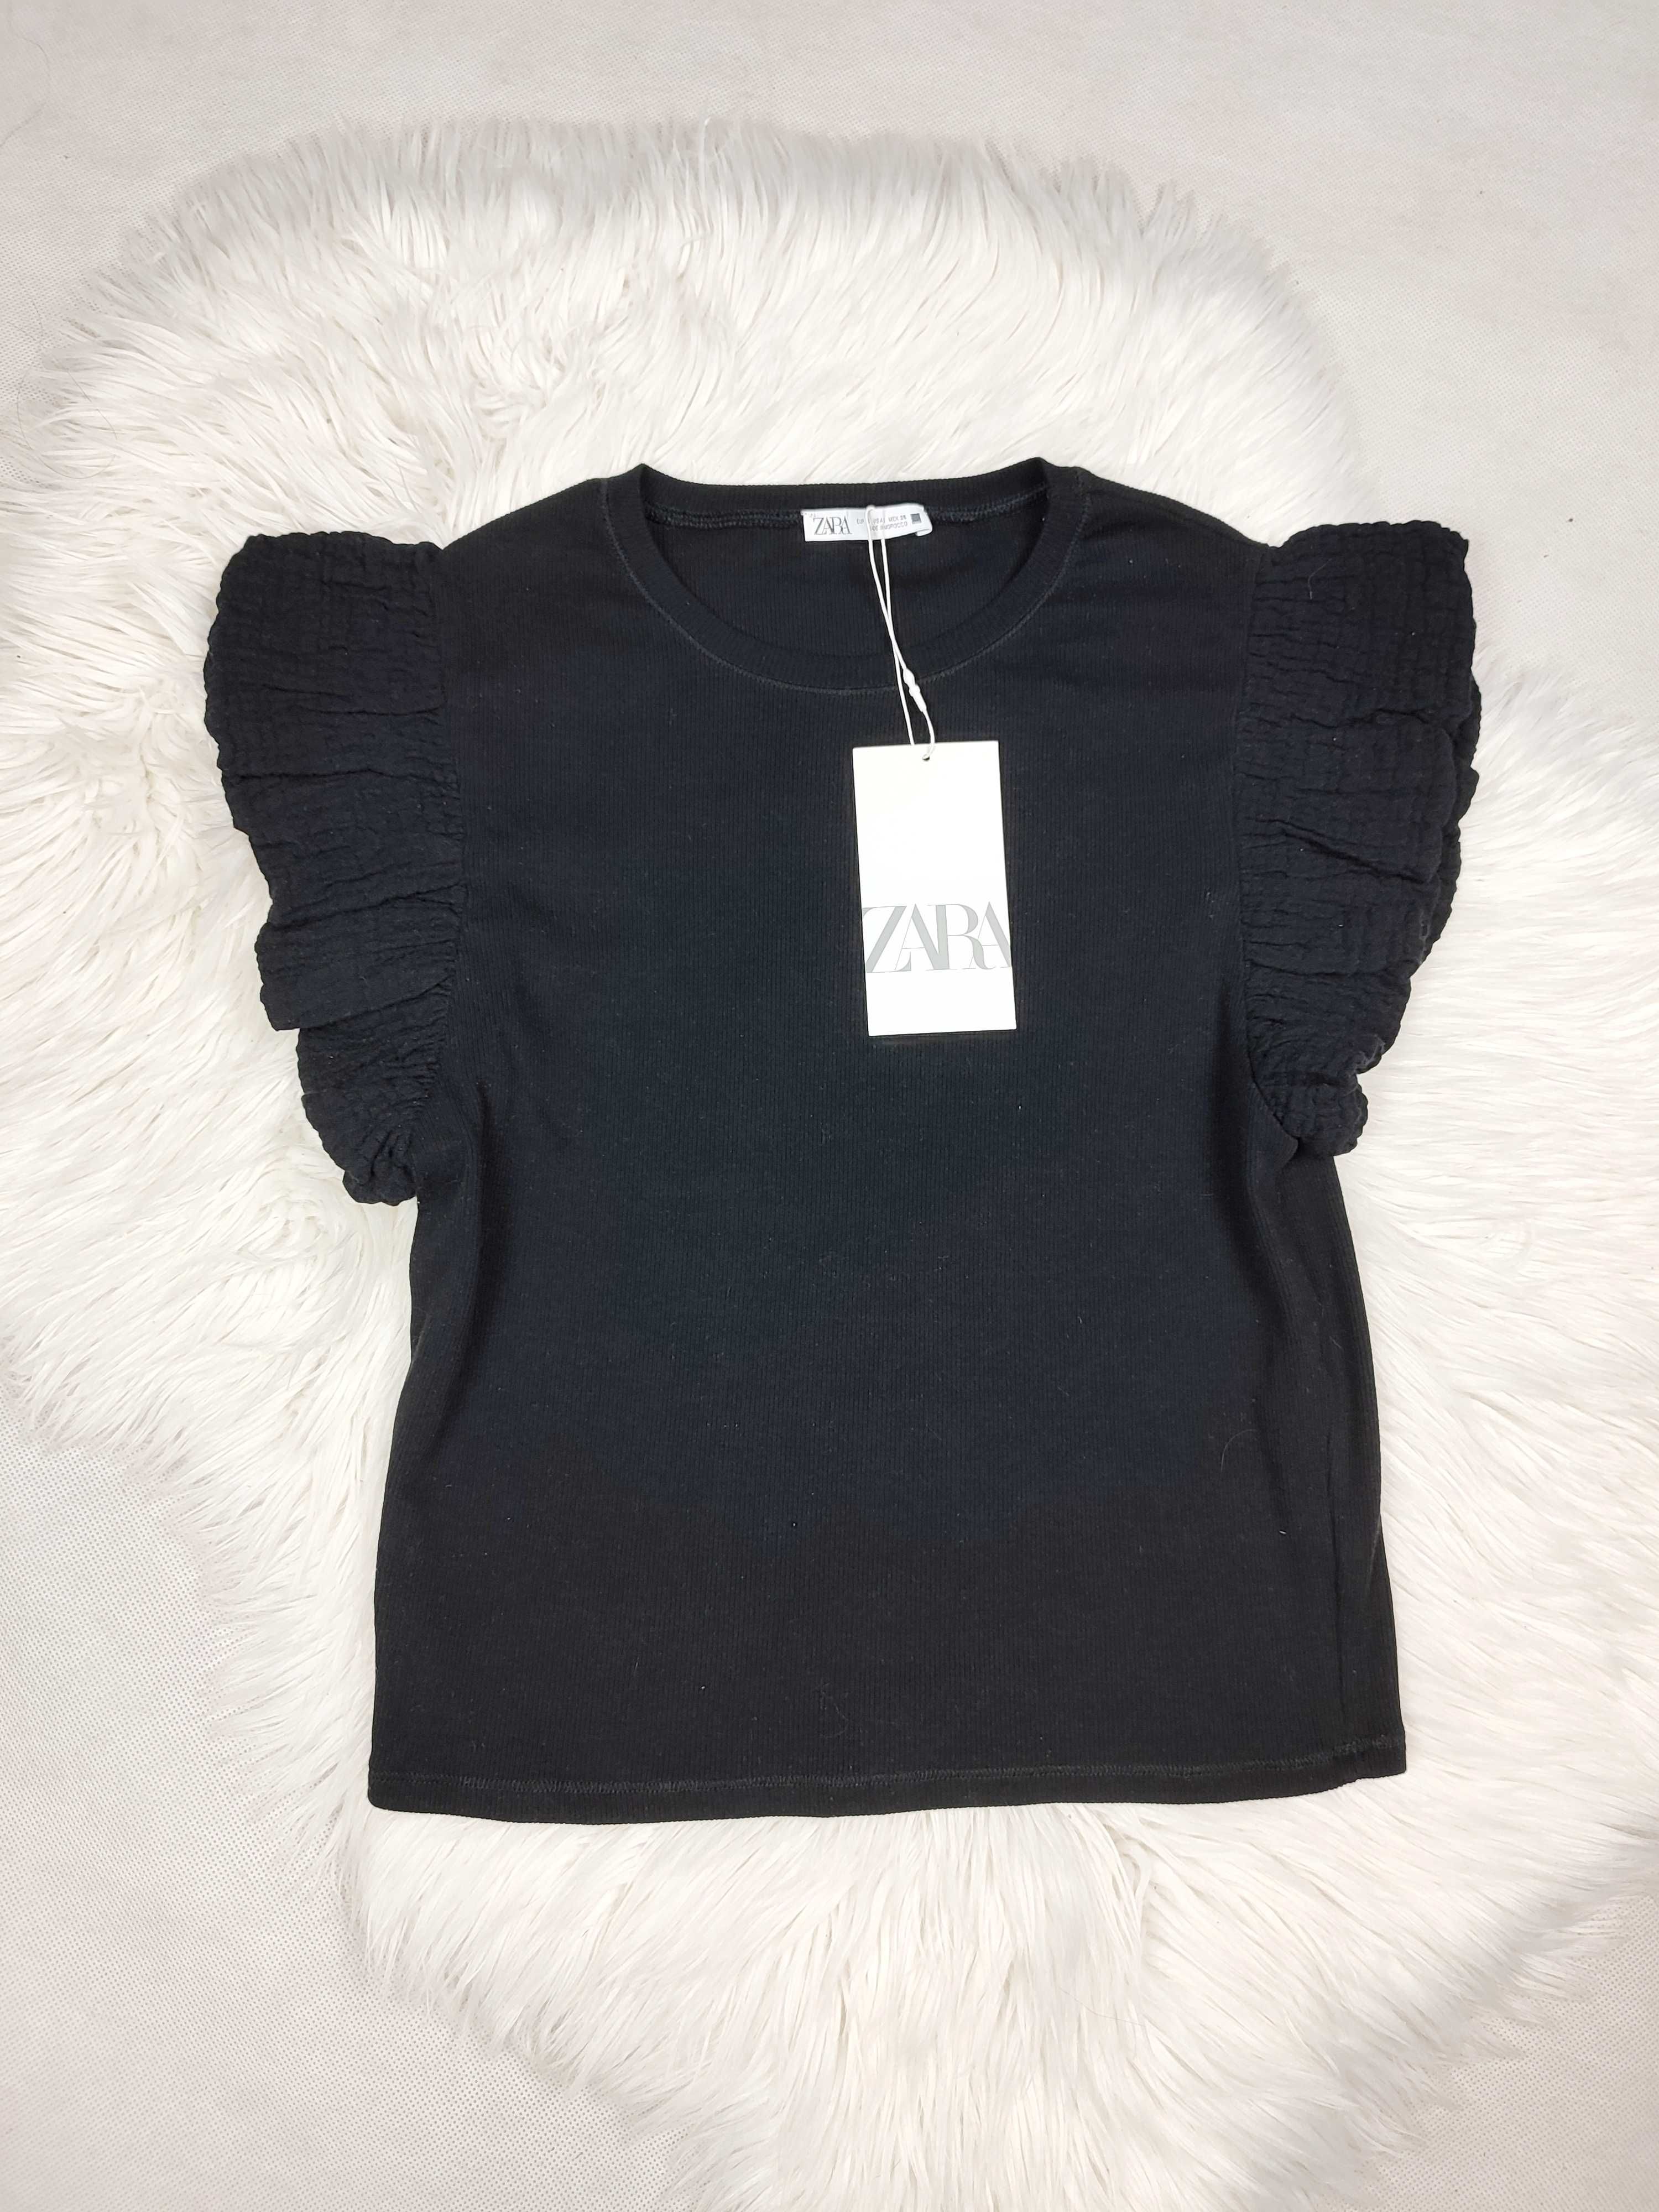 Czarna damska bluzka bawełniana t-shirt Zara r. S